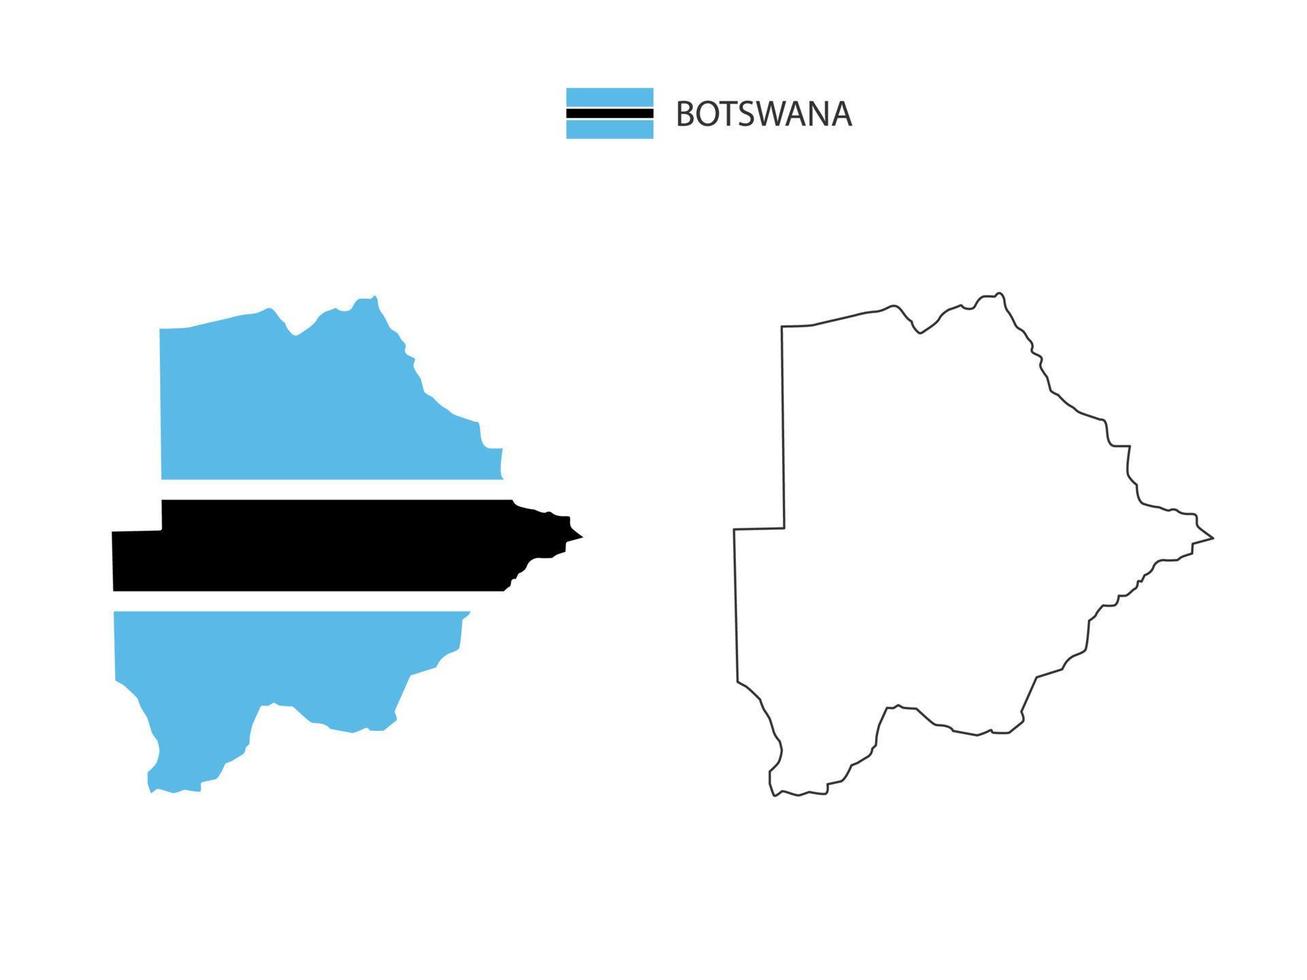 vector de ciudad de mapa de botswana dividido por estilo de simplicidad de contorno. tiene 2 versiones, versión de línea delgada negra y versión de color de bandera de país. ambos mapas estaban en el fondo blanco.